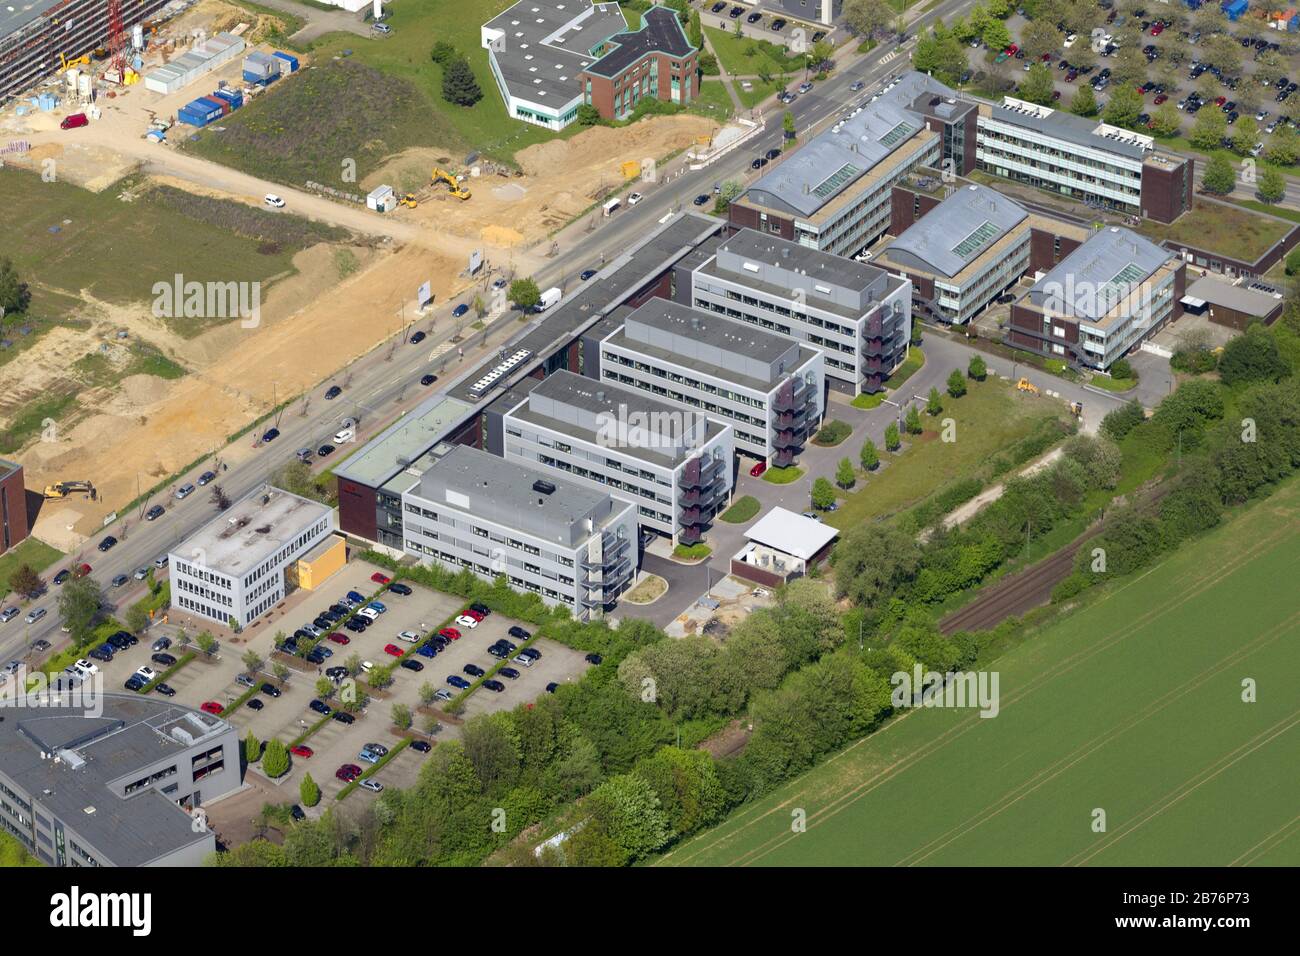 Institut Max Planck de physiologie moléculaire à Dortmund, 04.05.2012, vue aérienne, Allemagne, Rhénanie-du-Nord-Westphalie, région de la Ruhr, Dortmund Banque D'Images